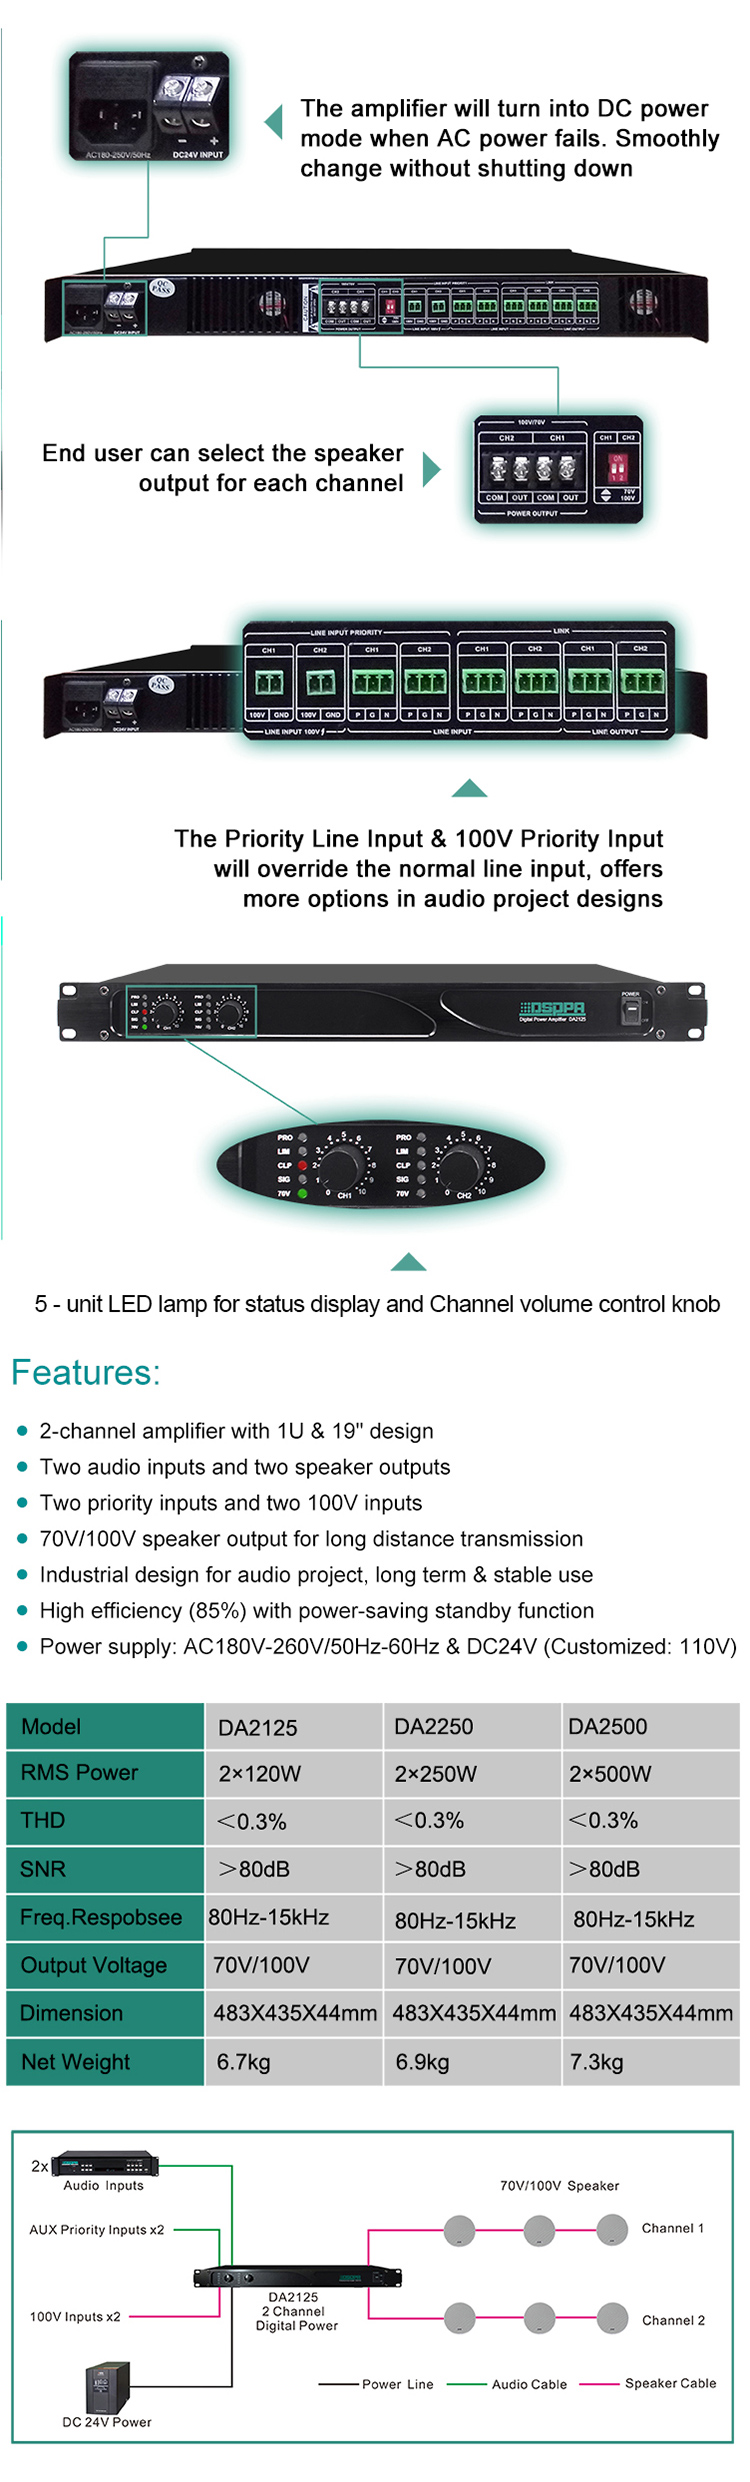 DA2500 2*500W Dual Channels Digital Amplifier